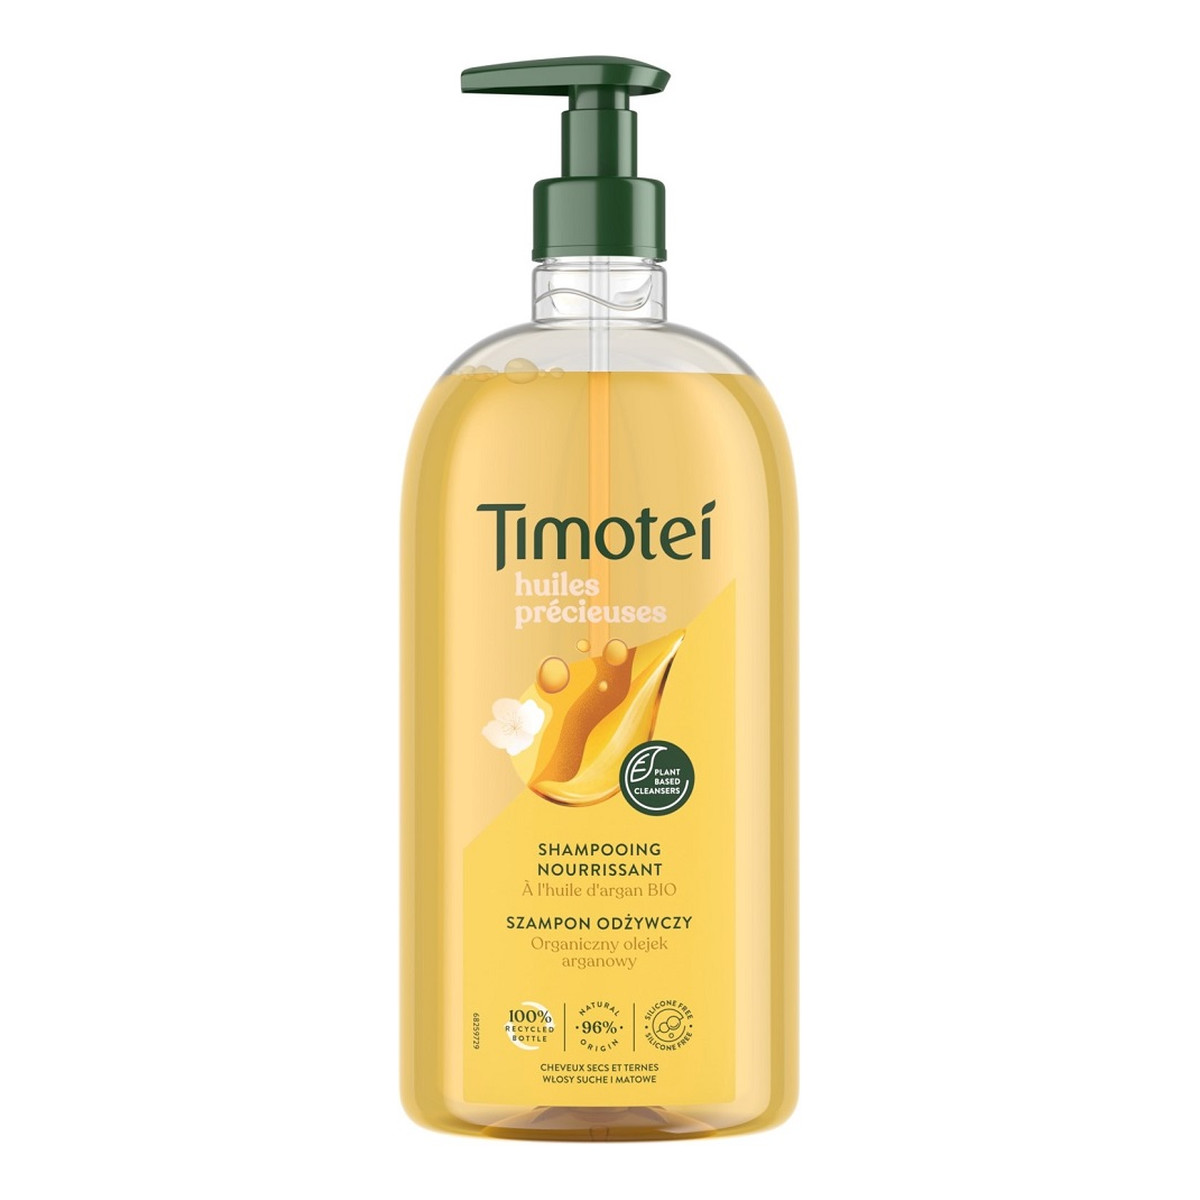 Timotei Precious oils Szampon odżywczy do włosów suchych i matowych z organicznym olejkiem arganowym 2x 750ml